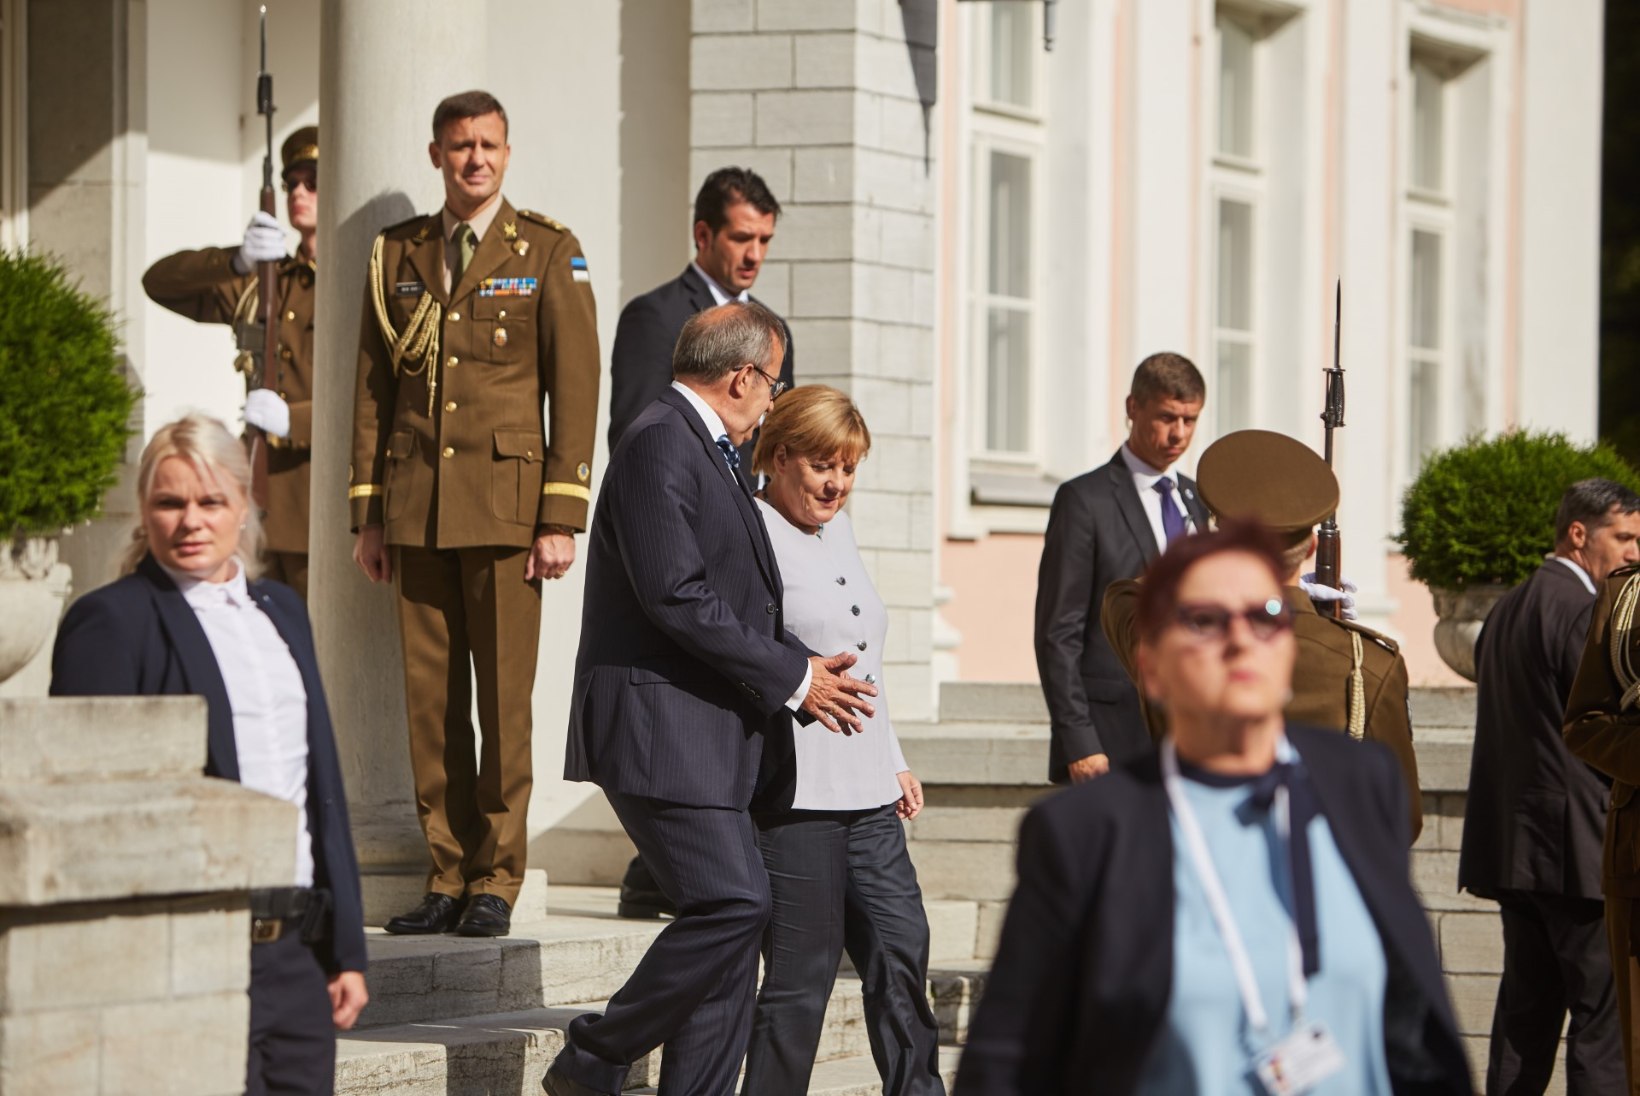 Eesti visiit oli Merkeli jaoks kui ajamasin, meenutades Berliini müüri langemist